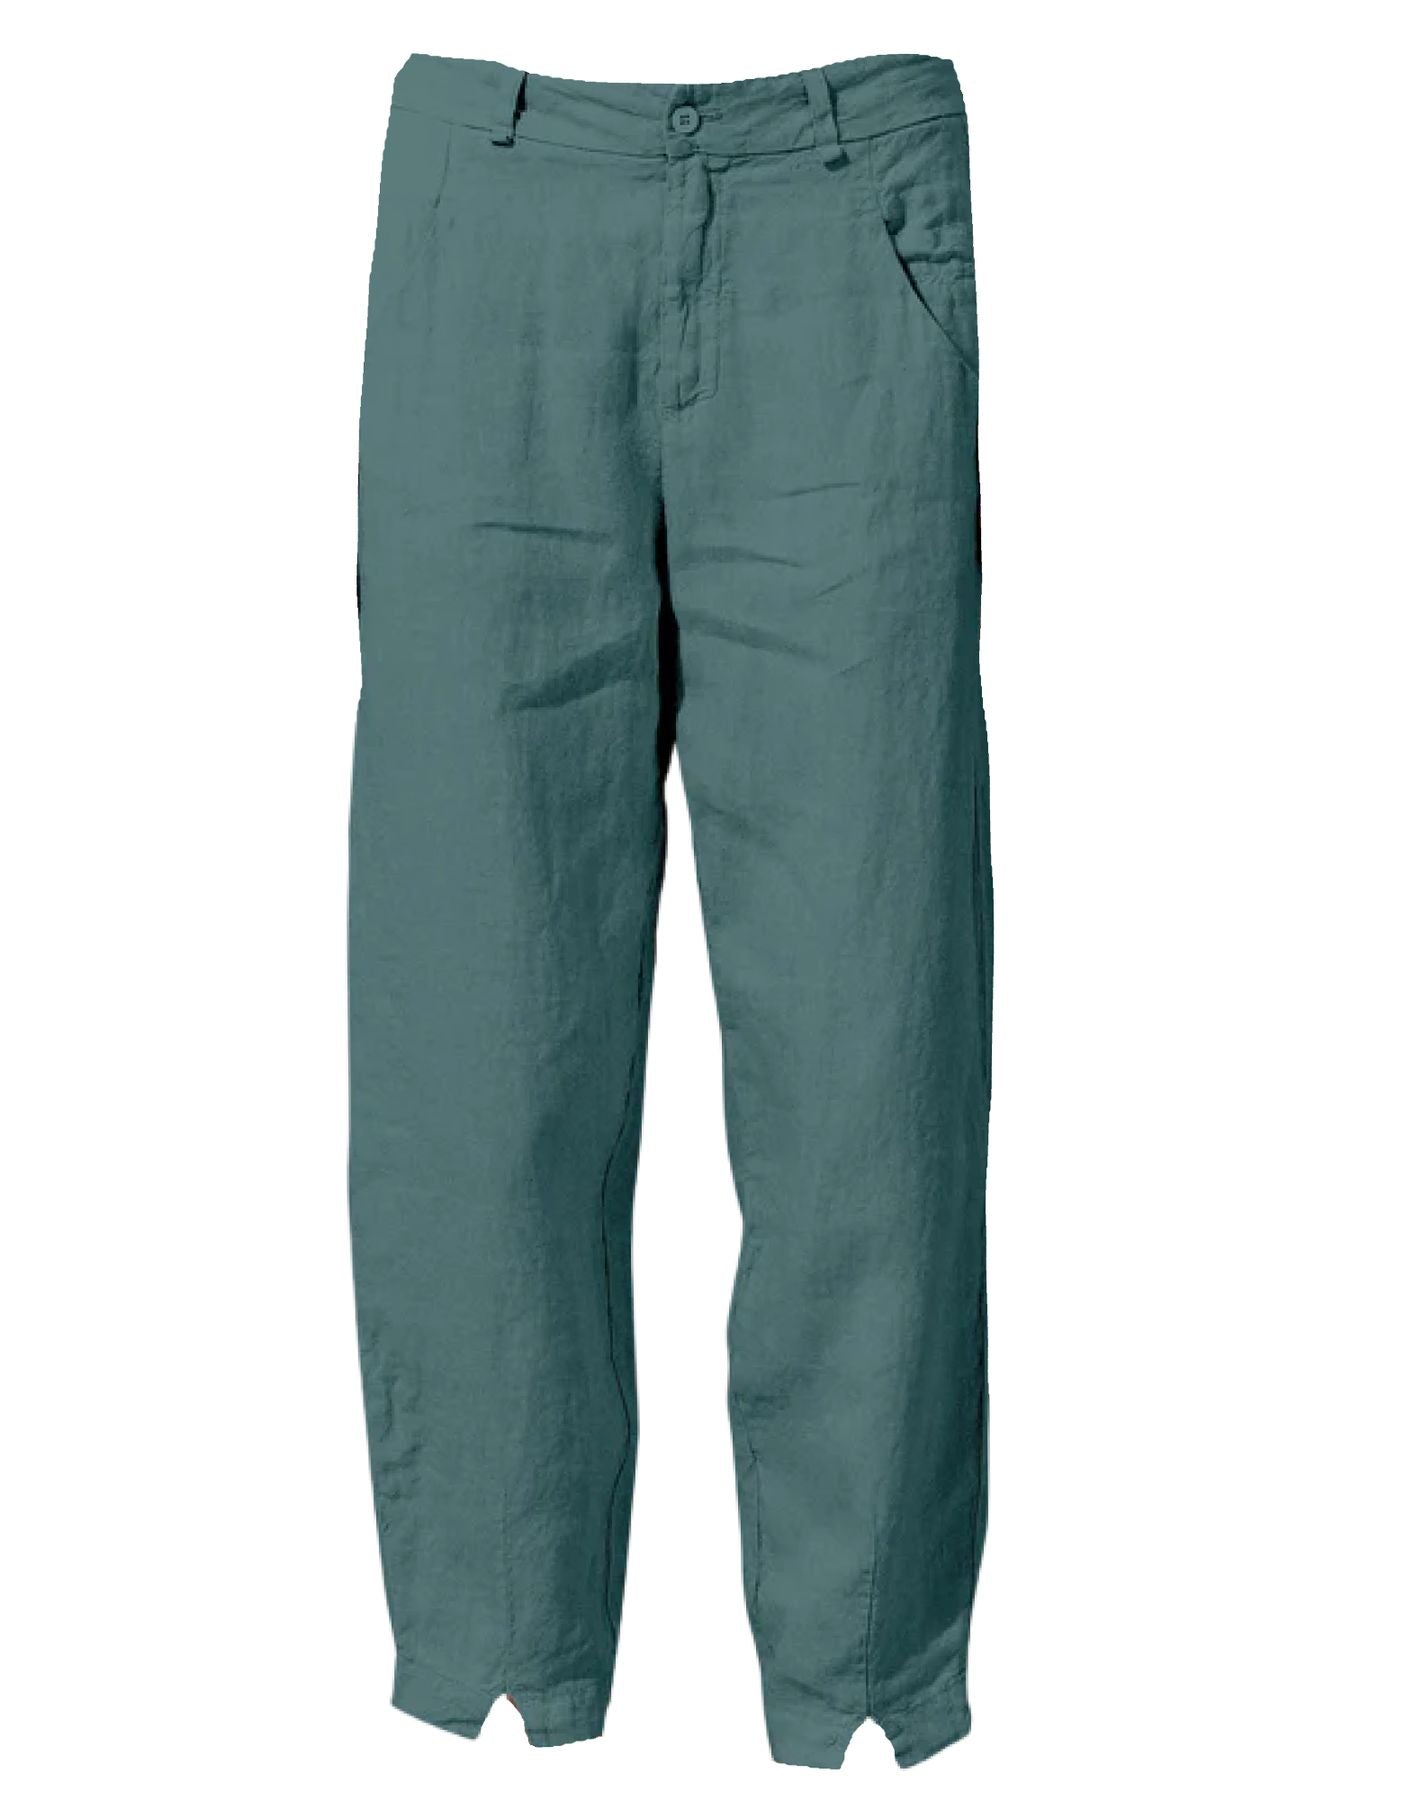 Pantalones para la mujer CFDTRWD132 25 TRANSIT